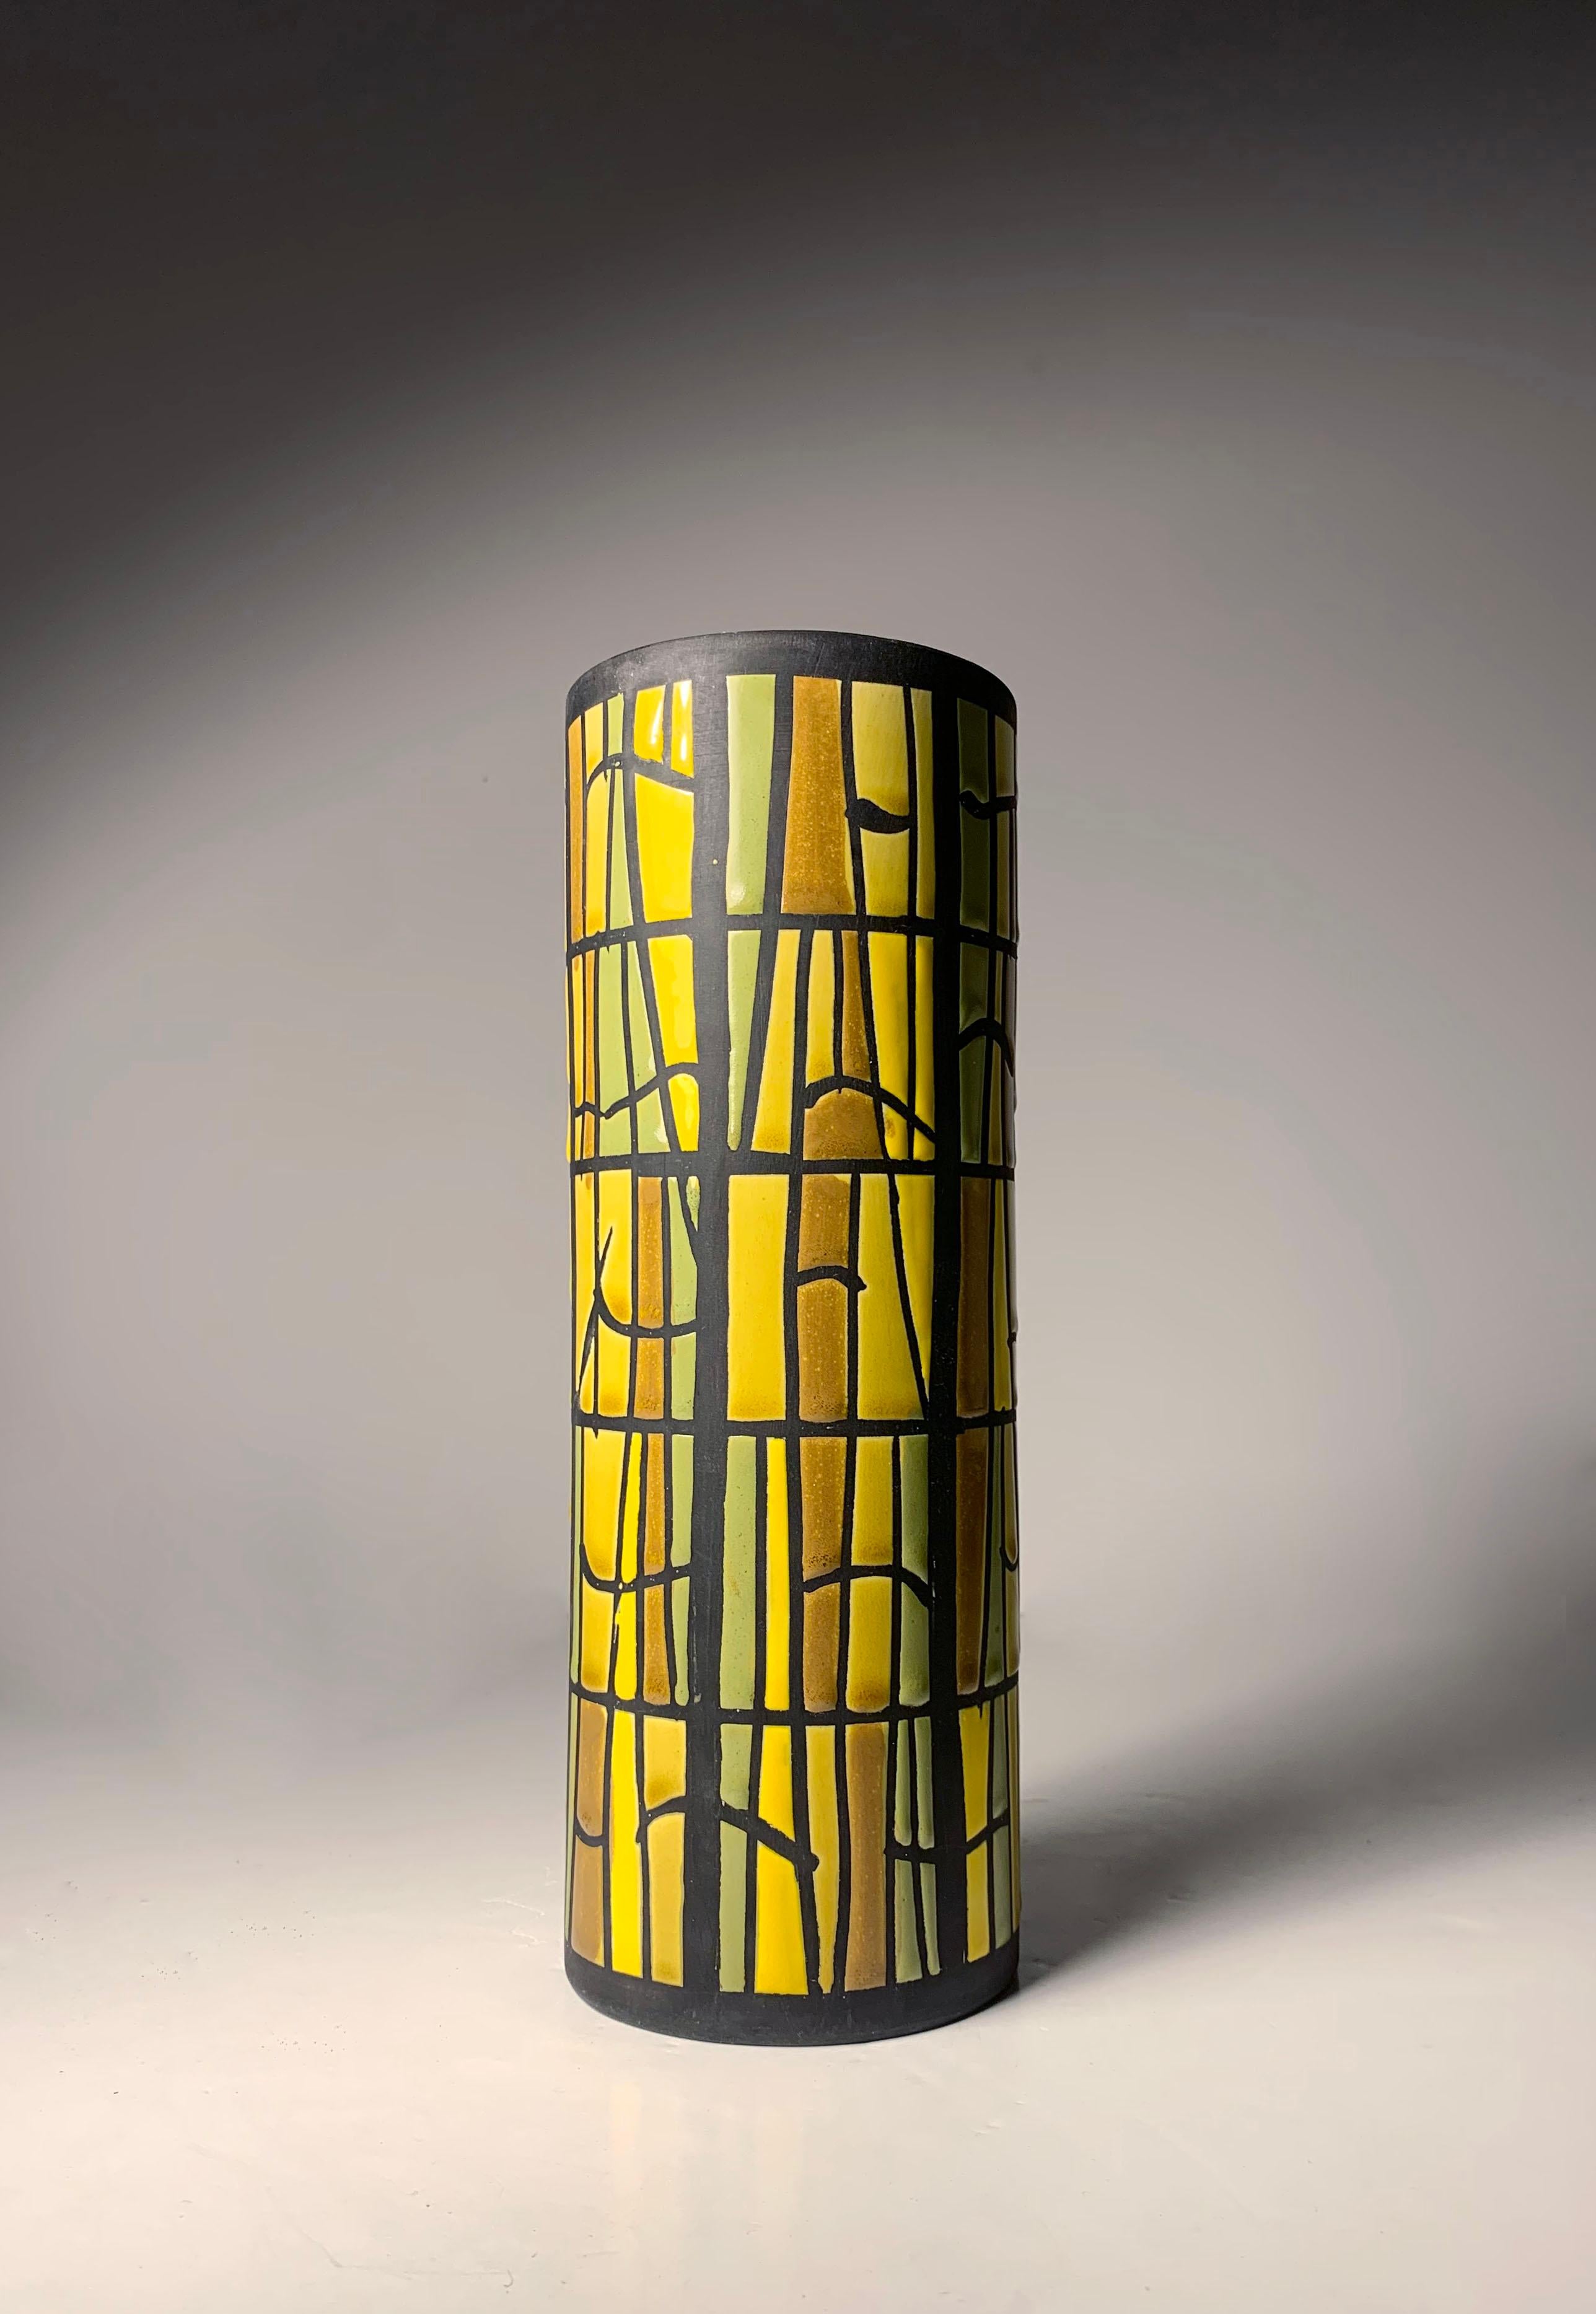 Vase aus italienischer Keramik von Alvino Bagni für Bitossi / Raymor. Ein Design, das ein Buntglasfenster simuliert.